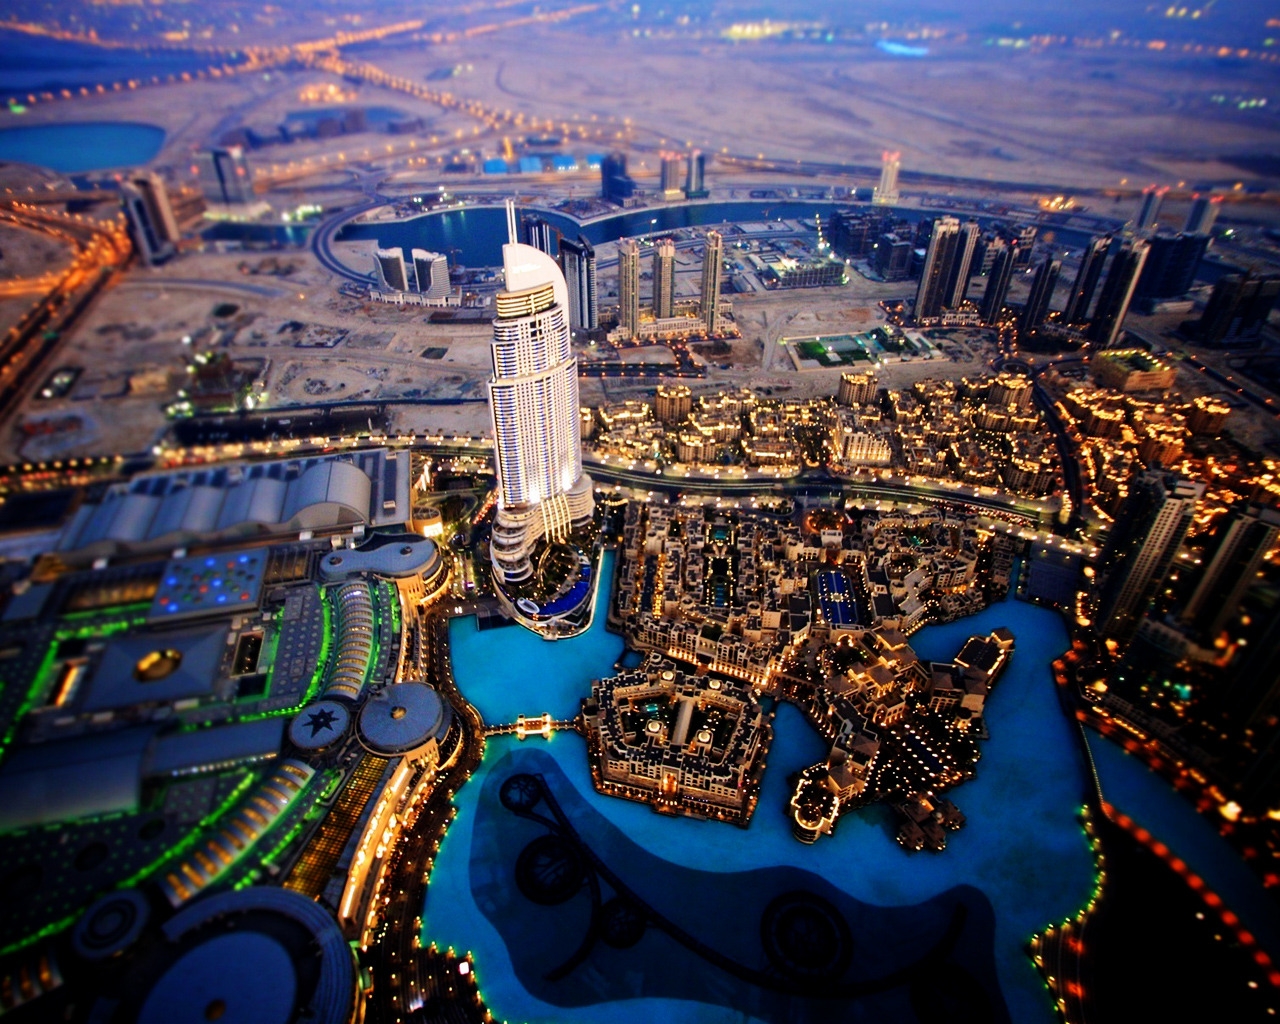 Dubai Sky View for 1280 x 1024 resolution